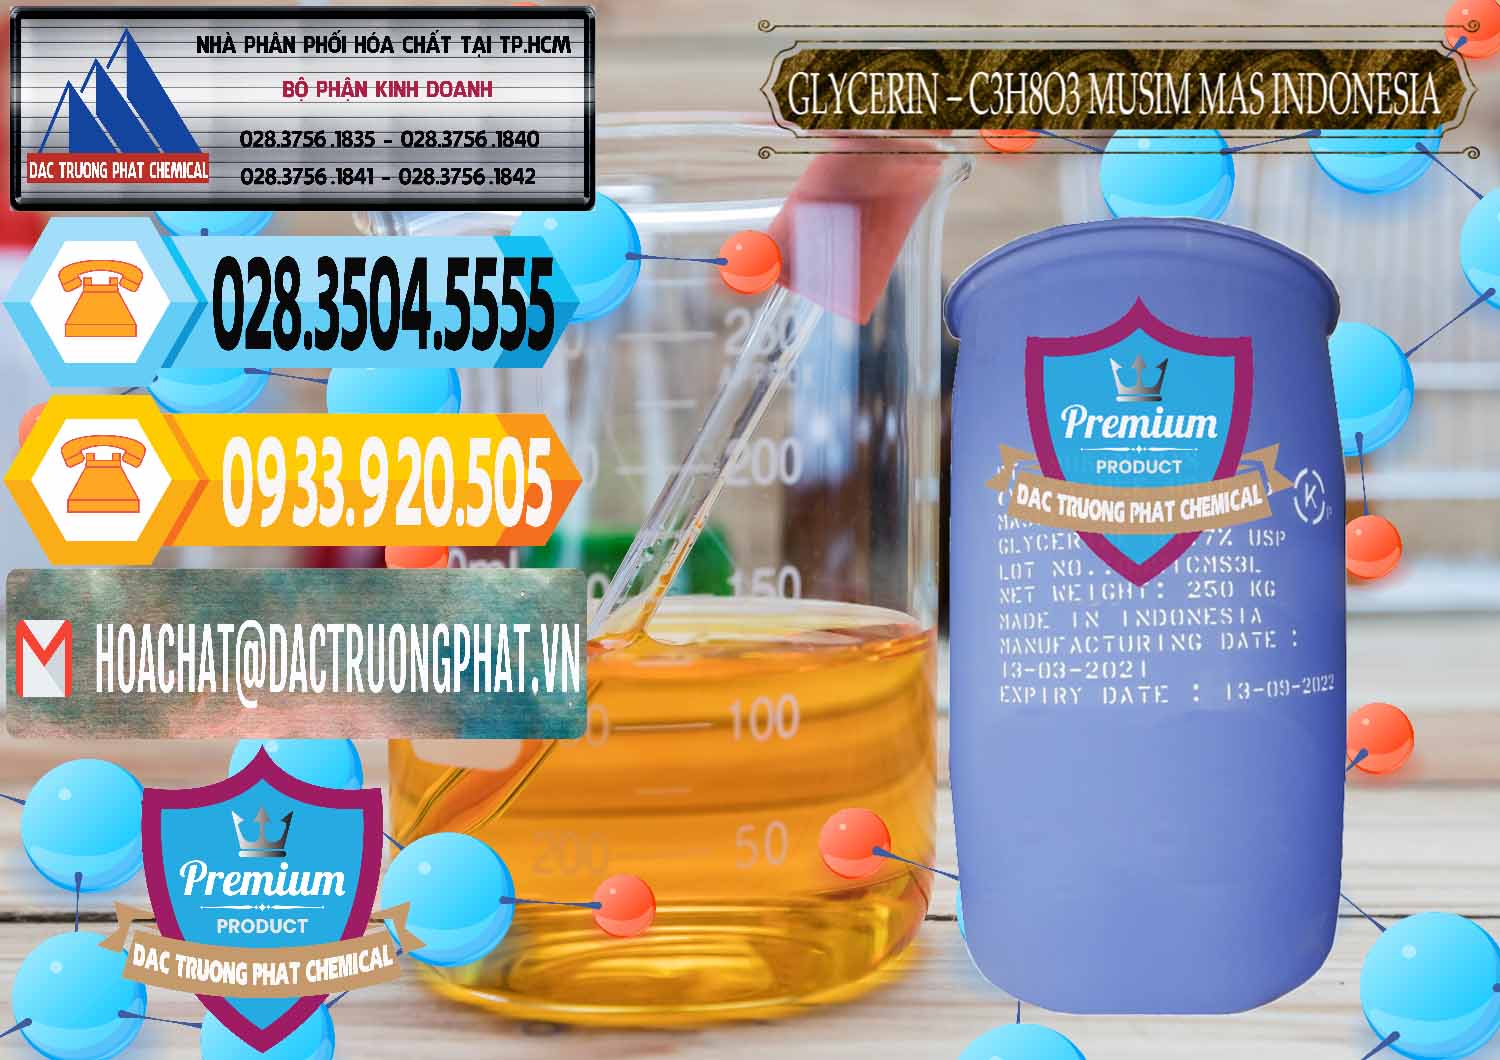 Công ty phân phối & bán Glycerin – C3H8O3 99.7% Musim Mas Indonesia - 0272 - Đơn vị bán ( cung cấp ) hóa chất tại TP.HCM - hoachattayrua.net